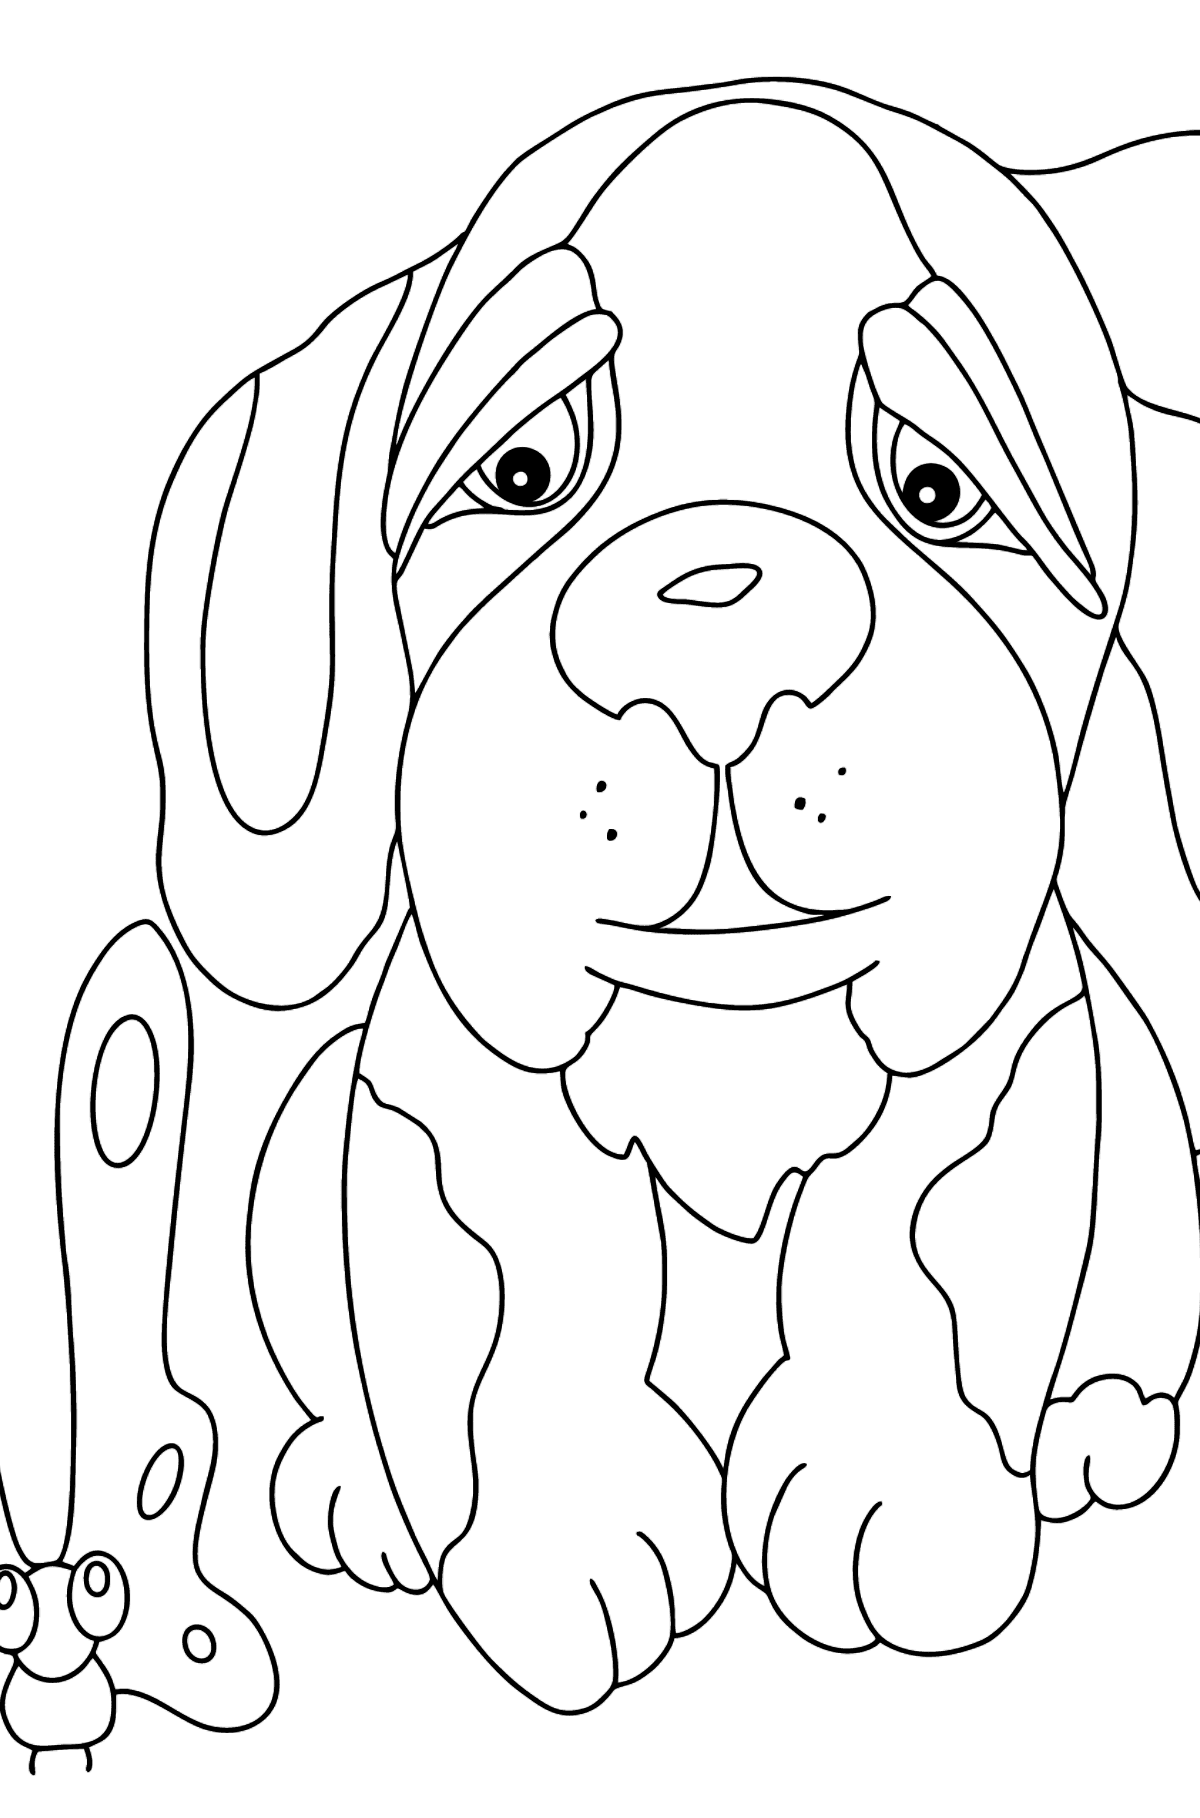 Desenho de cachorrinho sonhador para colorir - Imagens para Colorir para Crianças